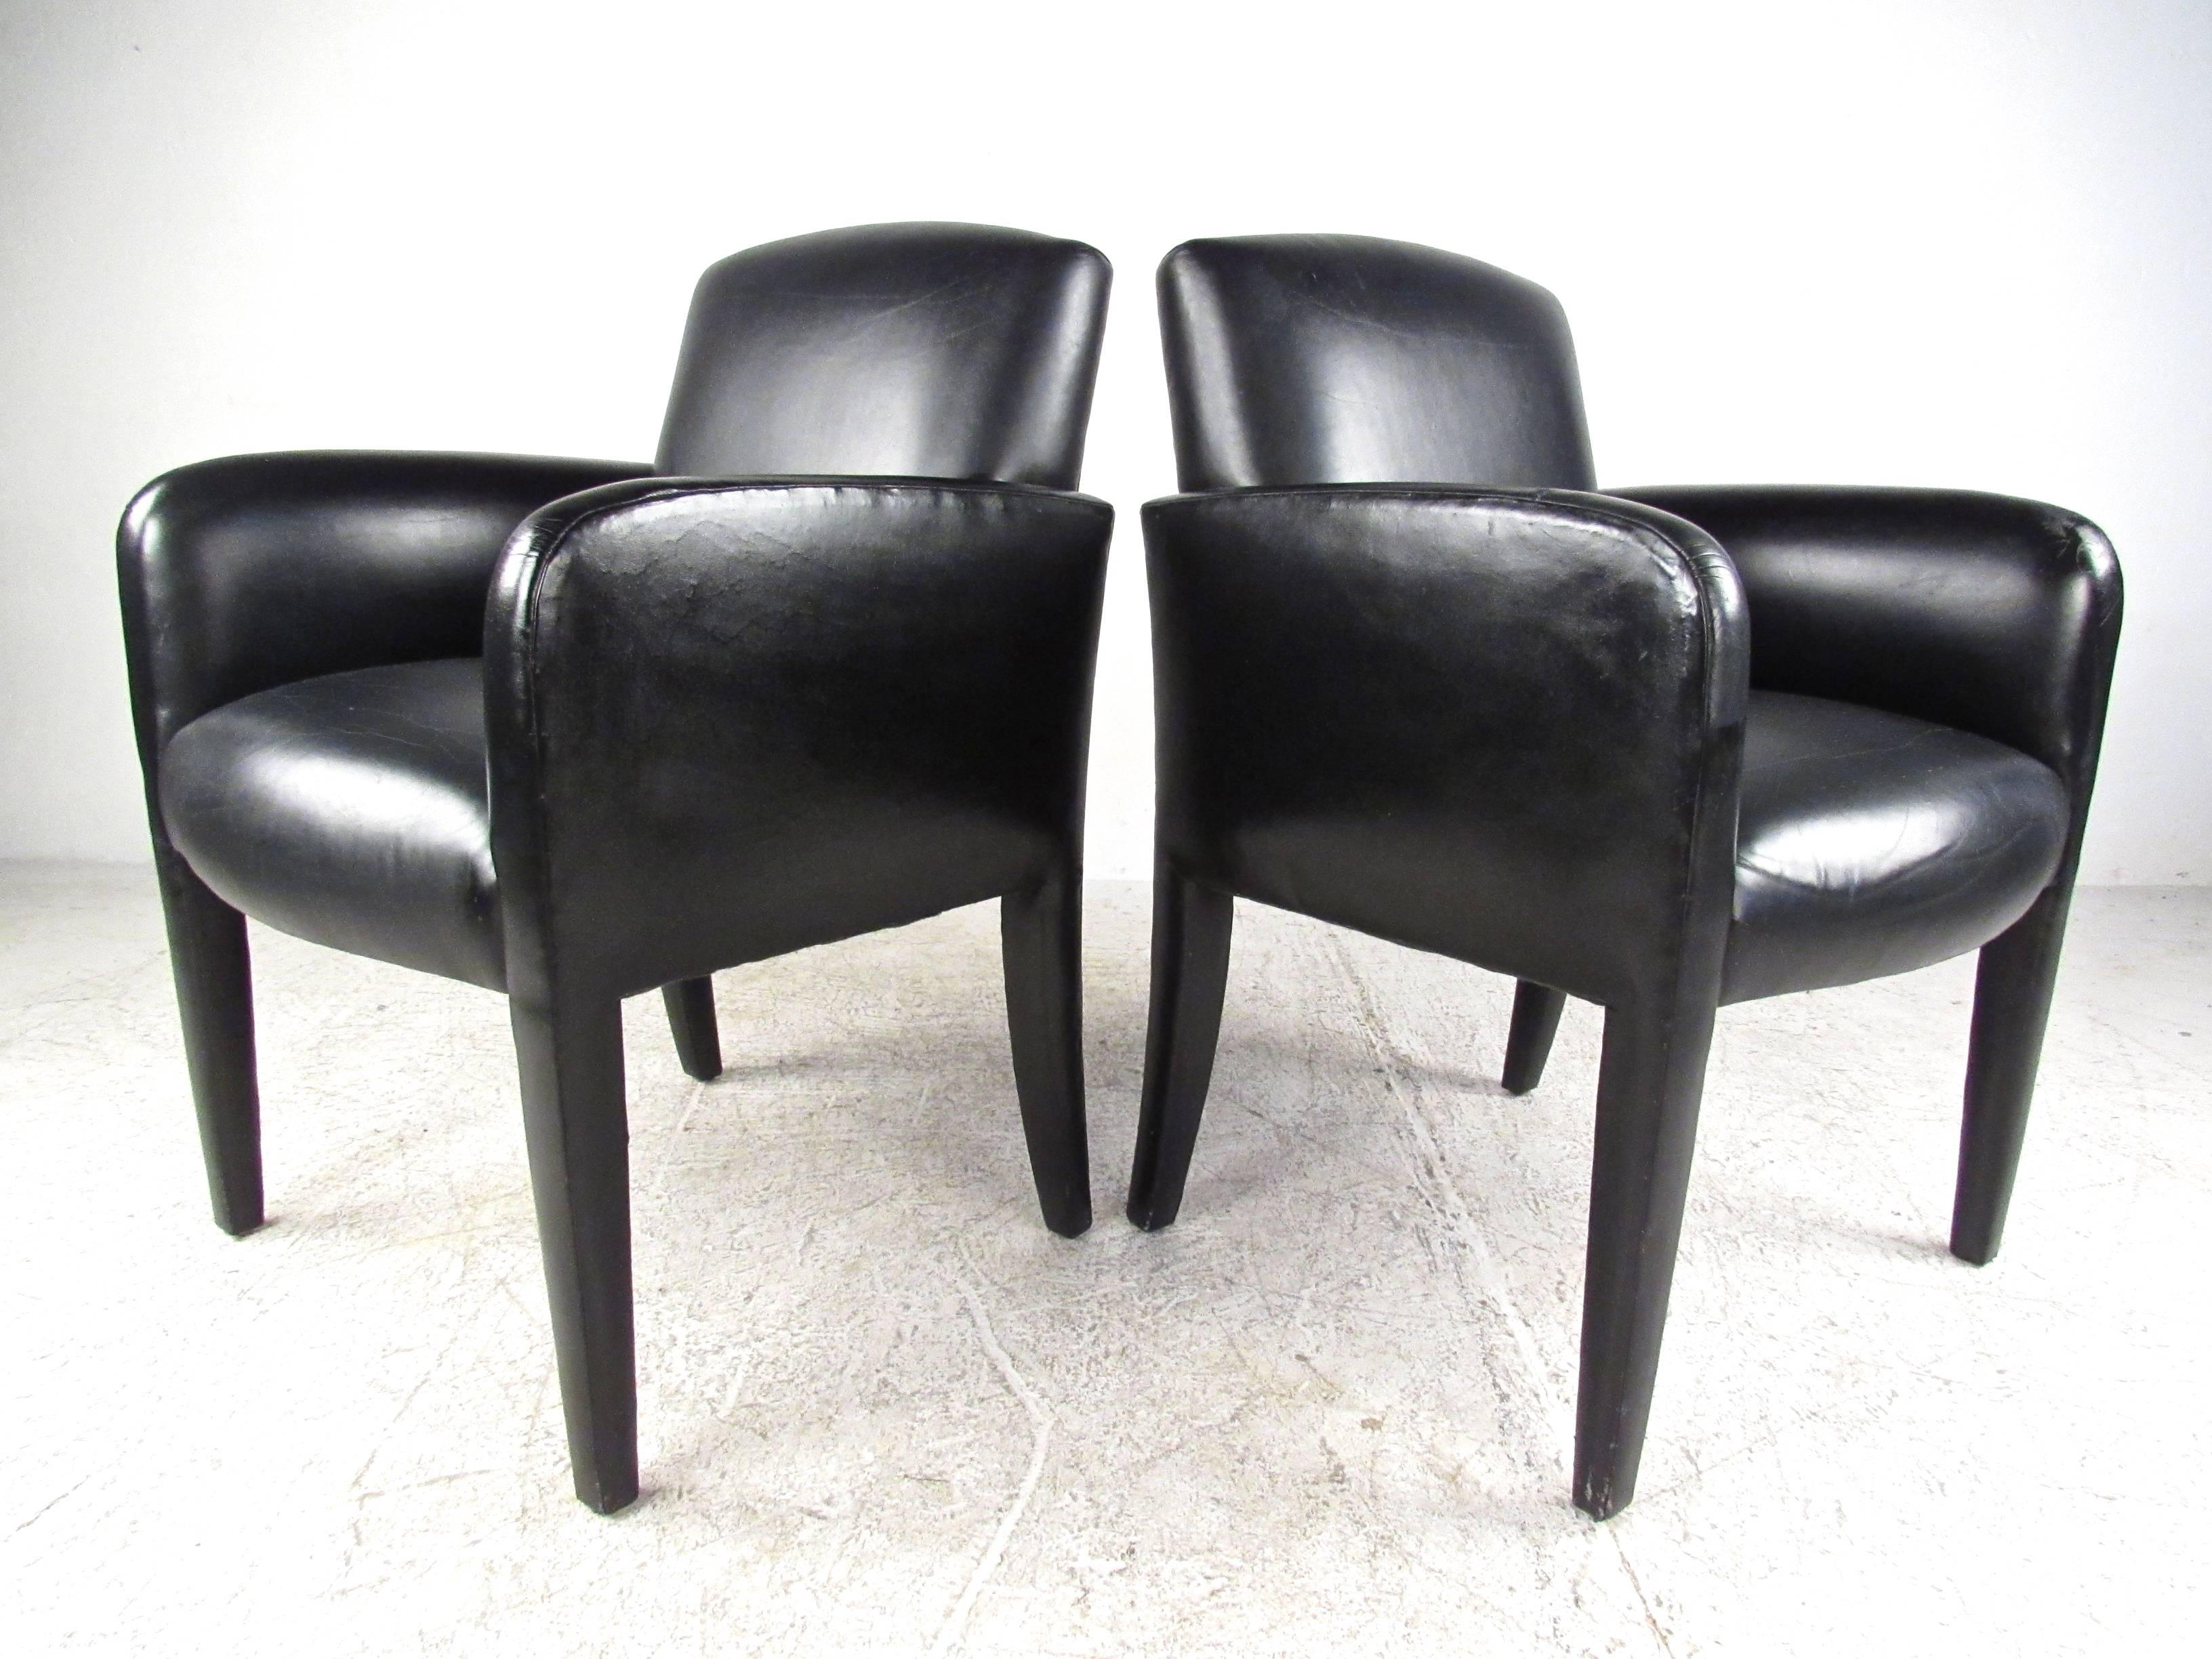 Dieses attraktive Paar moderner italienischer Beistellstühle verfügt über stilvolle ledergepolsterte Gestelle und ist eine wunderbare Ergänzung für jeden Sitzbereich. Ein äußerst bequemer Loungesessel mit dick gepolsterter Sitzfläche. Perfekte